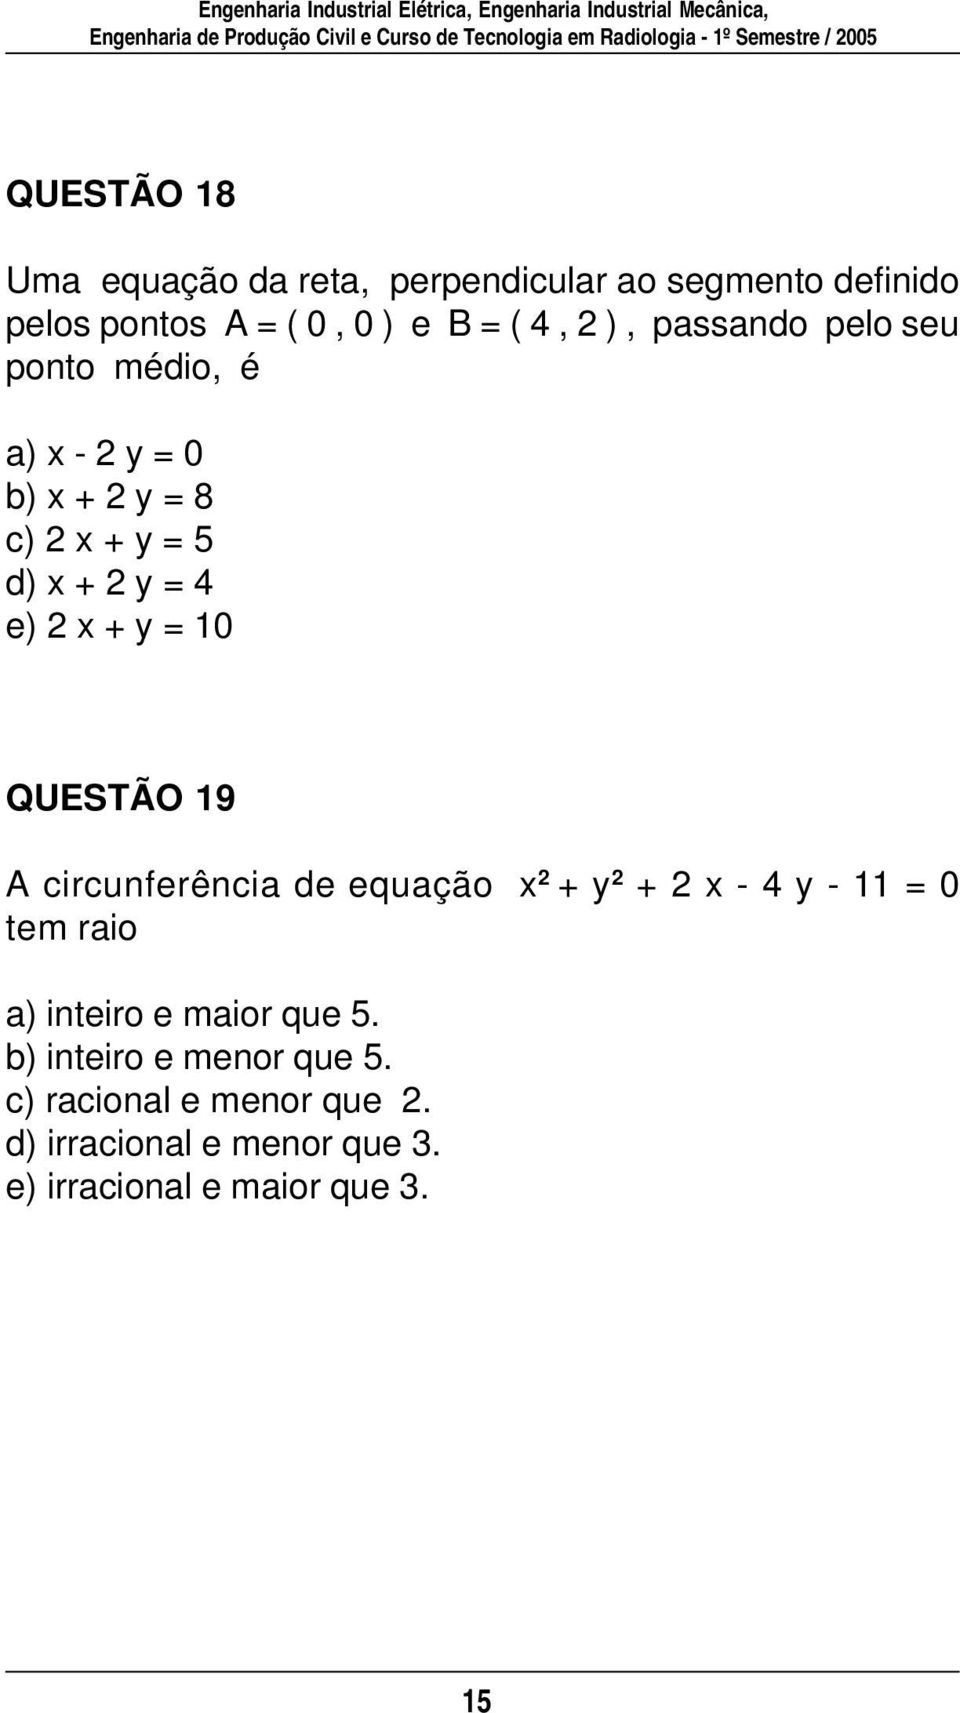 QUESTÃO 19 A circunferência de equação x + y + x - 4 y - 11 = 0 tem raio a) inteiro e maior que 5.